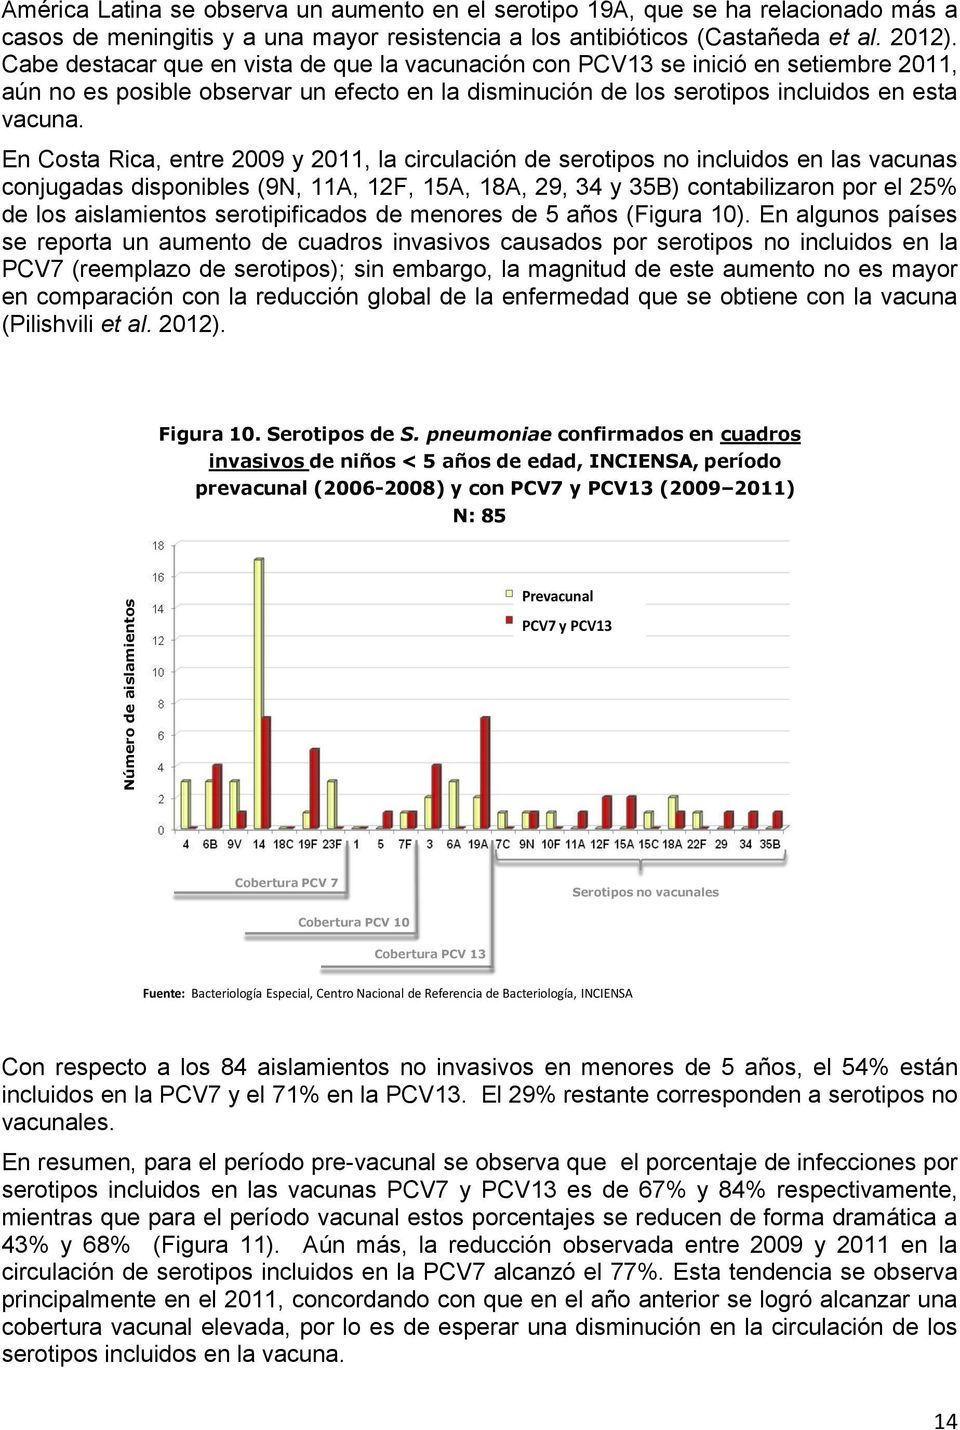 En Costa Rica, entre 2009 y 2011, la circulación de serotipos no incluidos en las vacunas conjugadas disponibles (9N, 11A, 12F, 15A, 18A, 29, 34 y 35B) contabilizaron por el 25% de los aislamientos